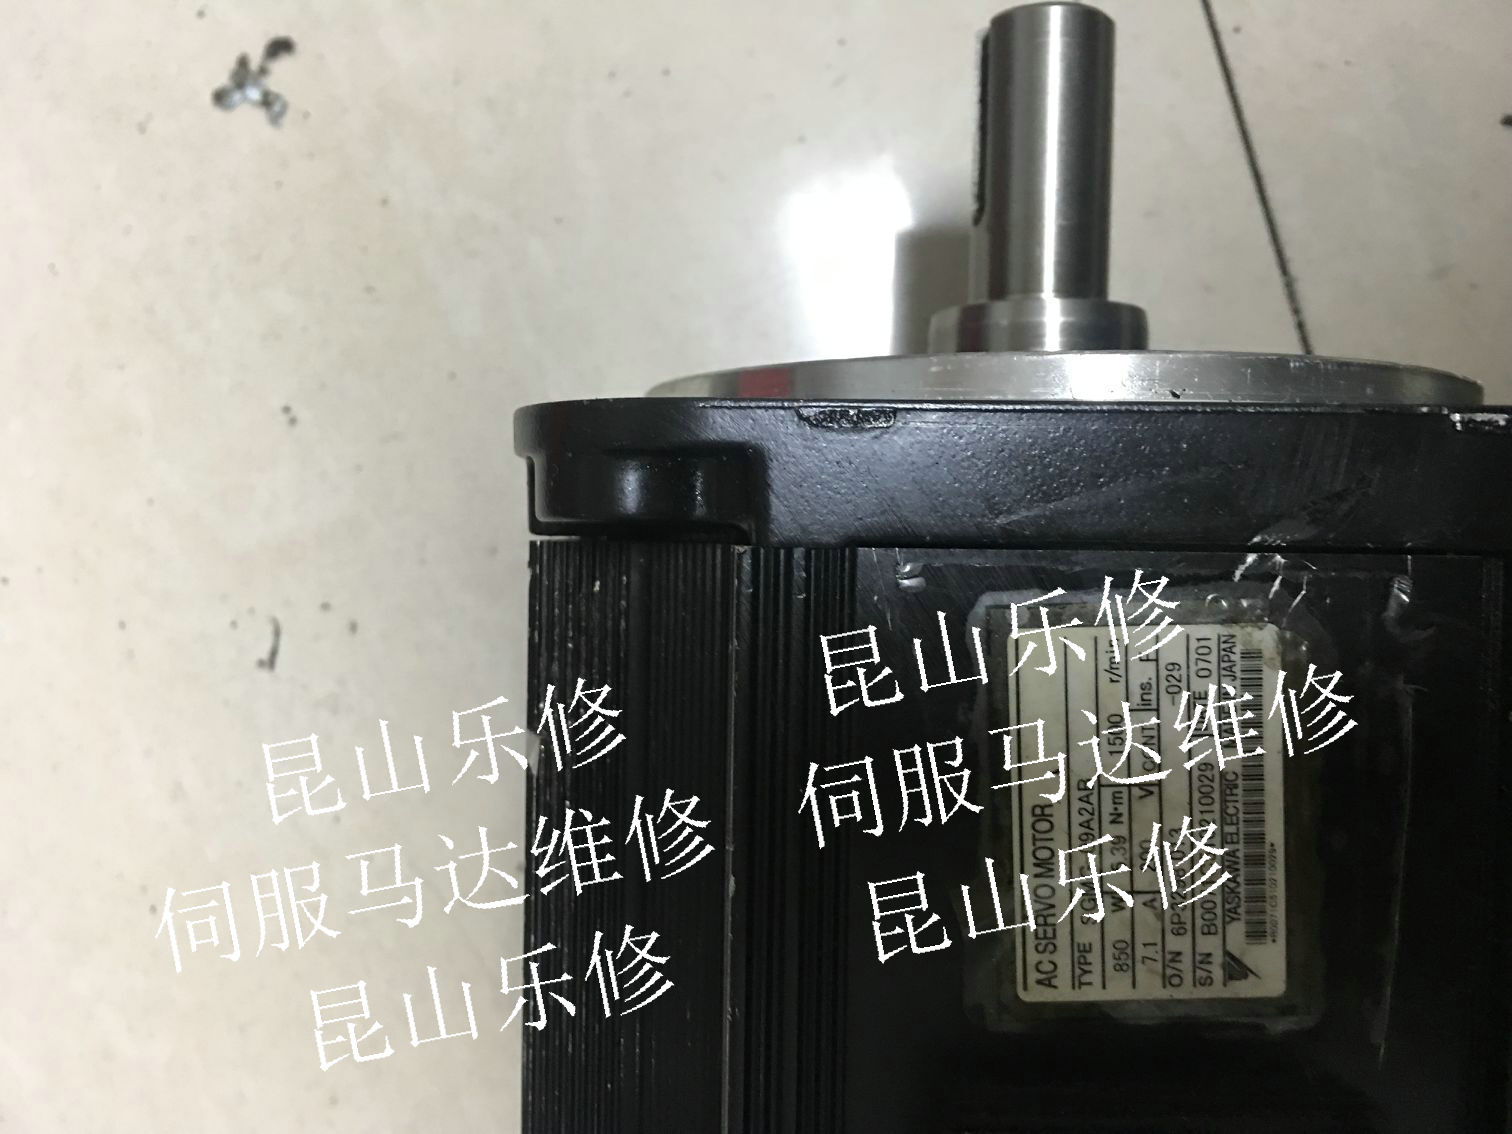 上海松江AB伺服电机维修MPL-B4560F-SJ72AA维修刹车更换轴承调试原点议价